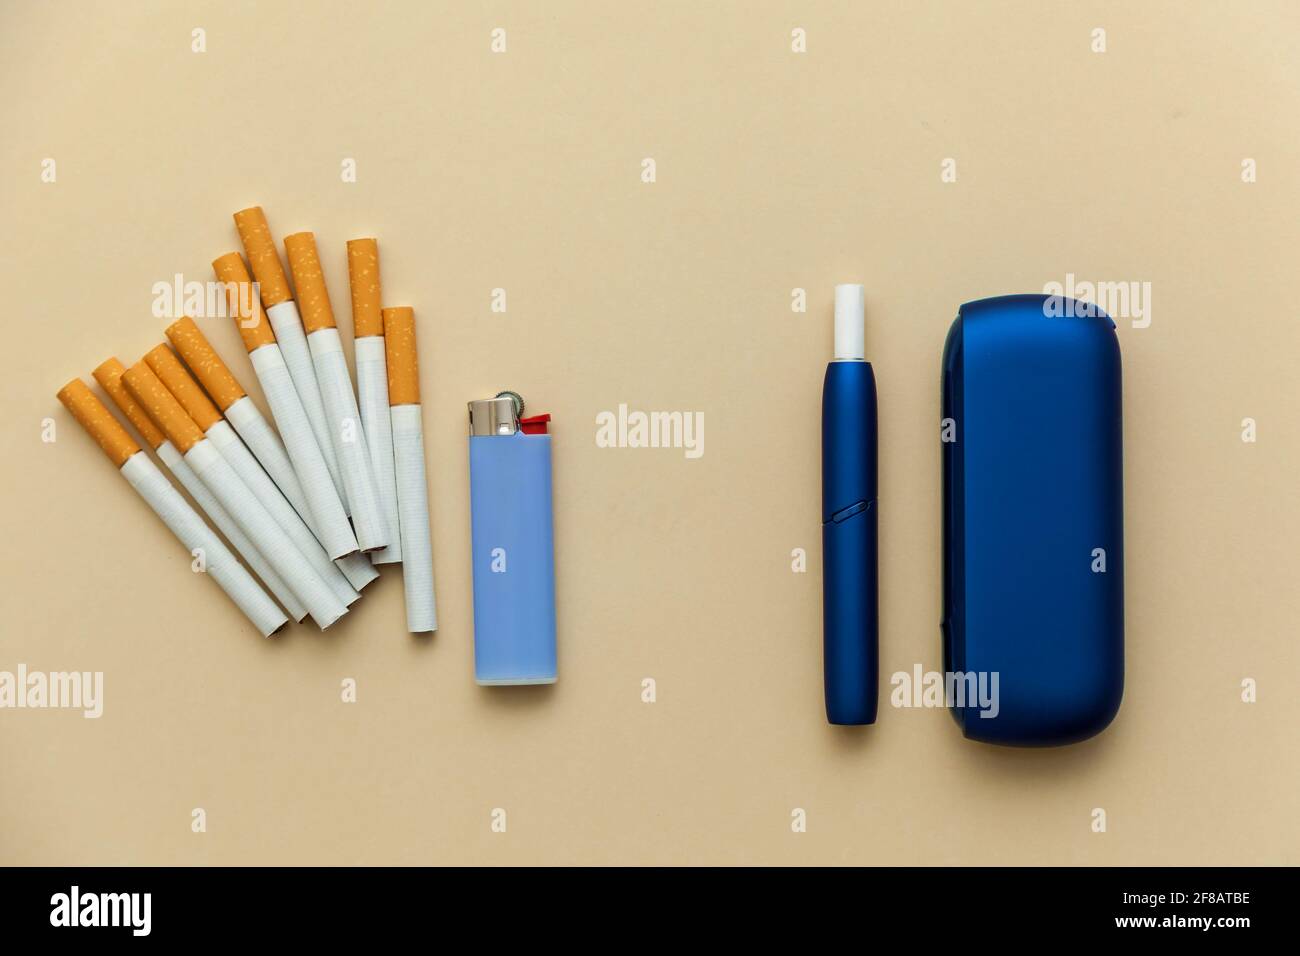 https://c8.alamy.com/compde/2f8atbe/elektronische-blaue-iqos-zigarette-gewohnliche-zigaretten-mit-einem-feuerzeug-auf-einem-beigen-hintergrund-foto-mit-platz-fur-text-logo-und-design-konzept-hea-2f8atbe.jpg